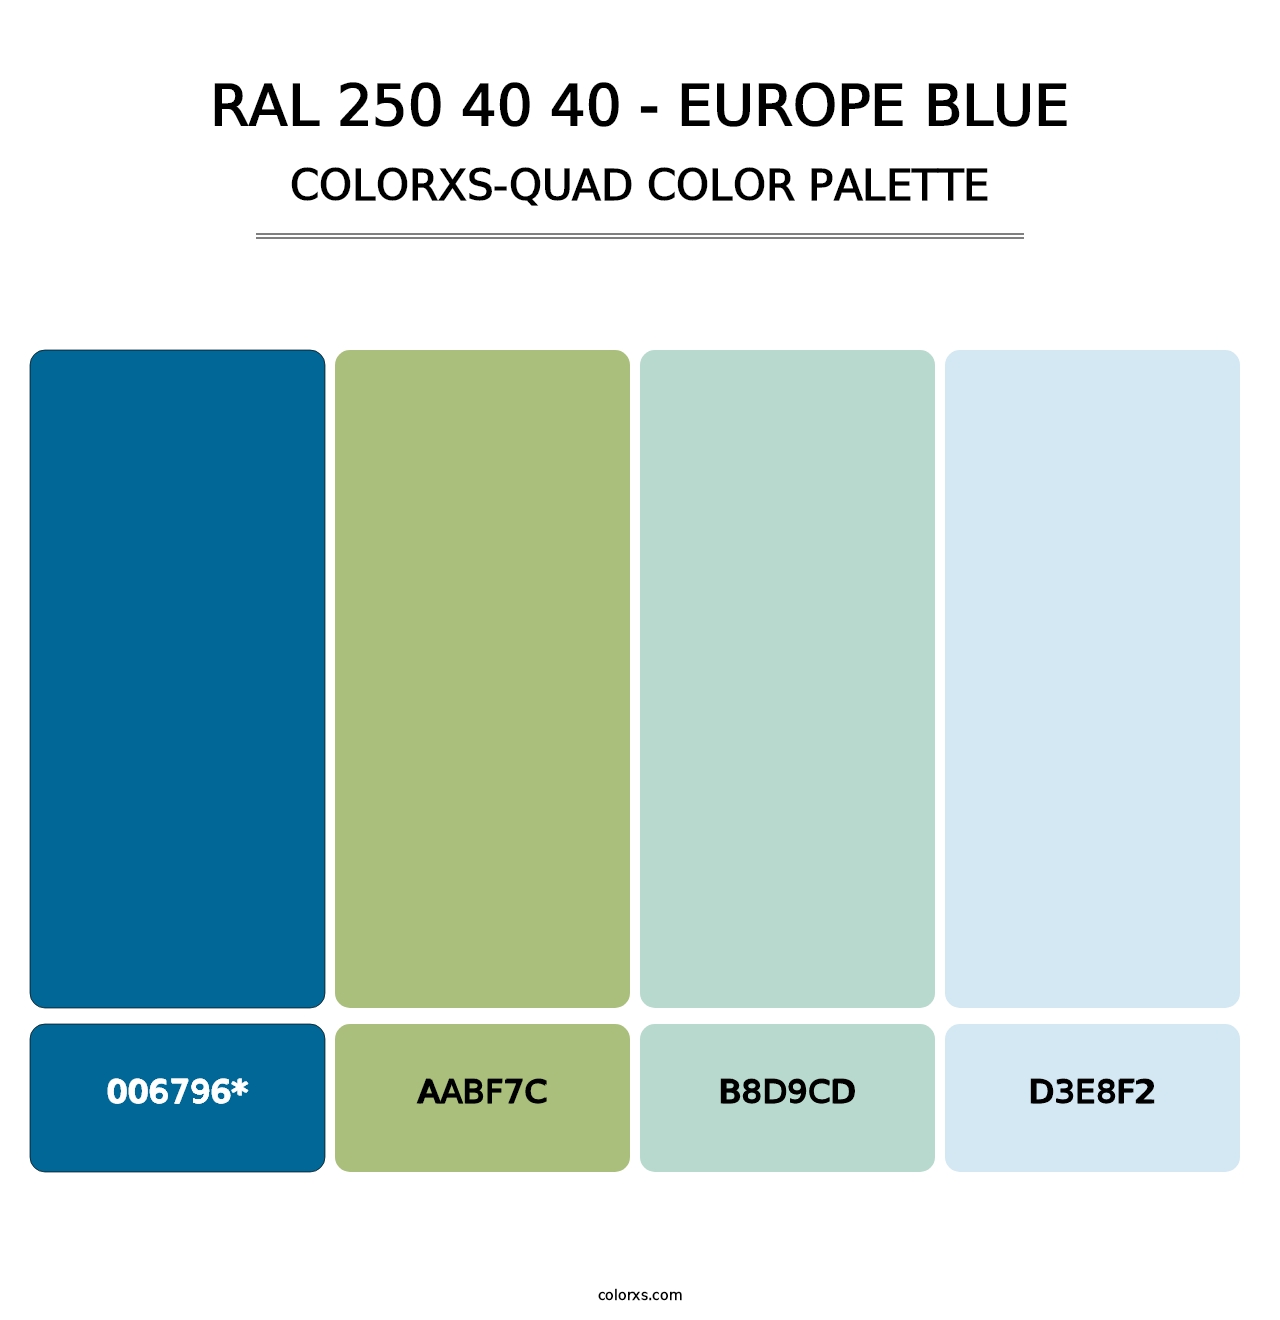 RAL 250 40 40 - Europe Blue - Colorxs Quad Palette